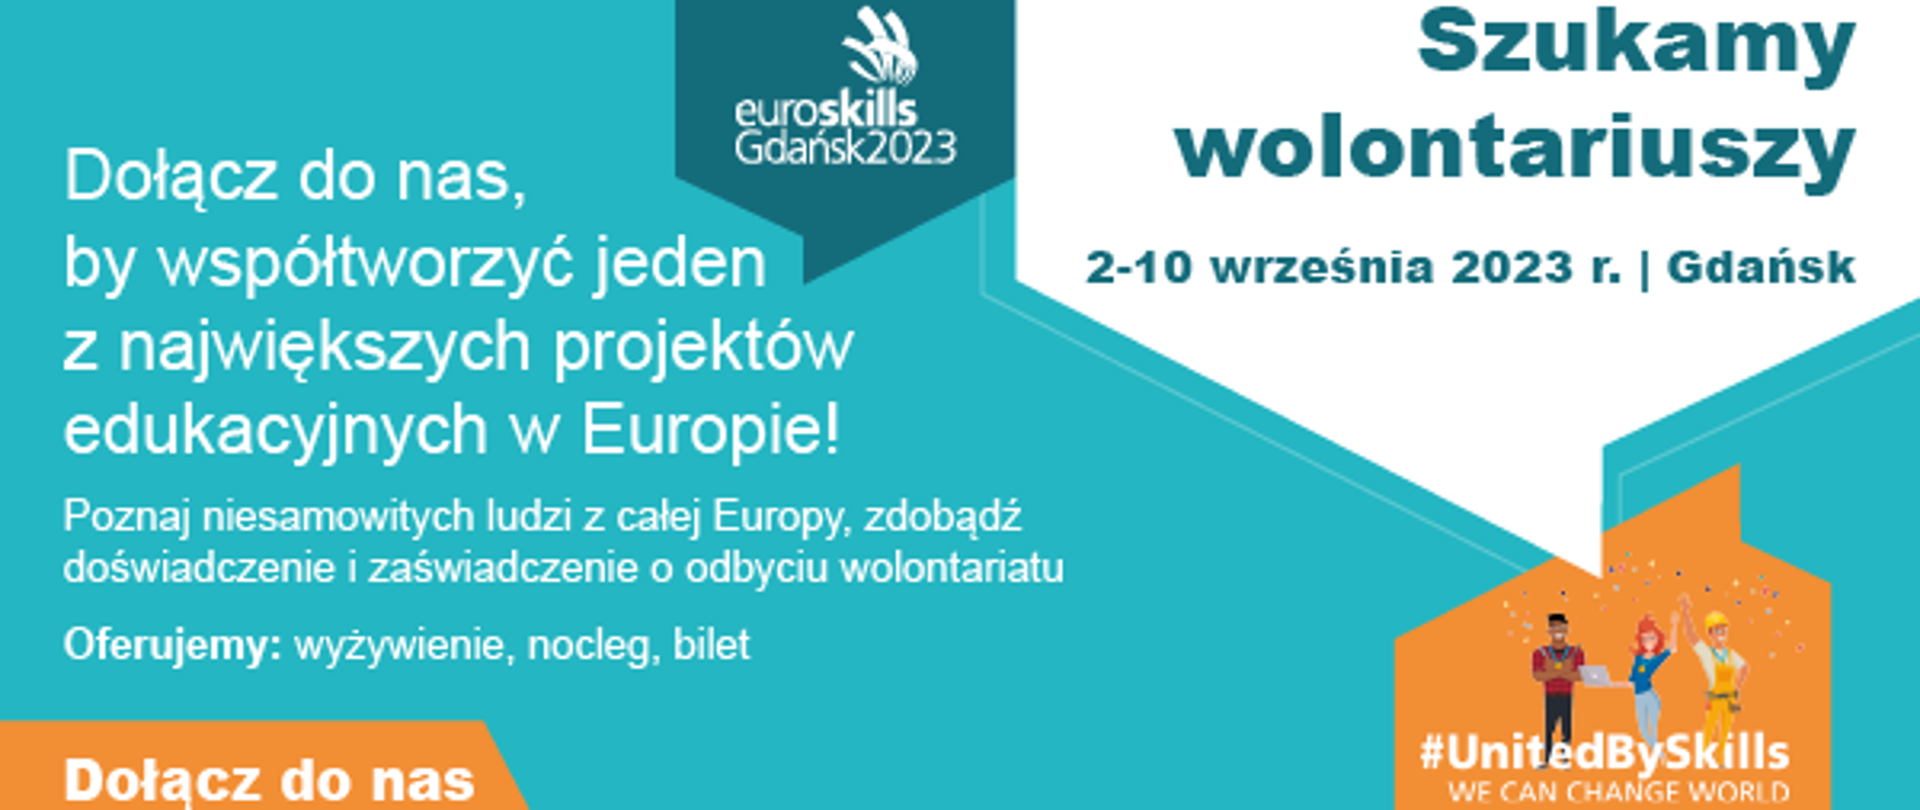 Euroskills Gdańsk 2023 - Szukamy wolontariuszy